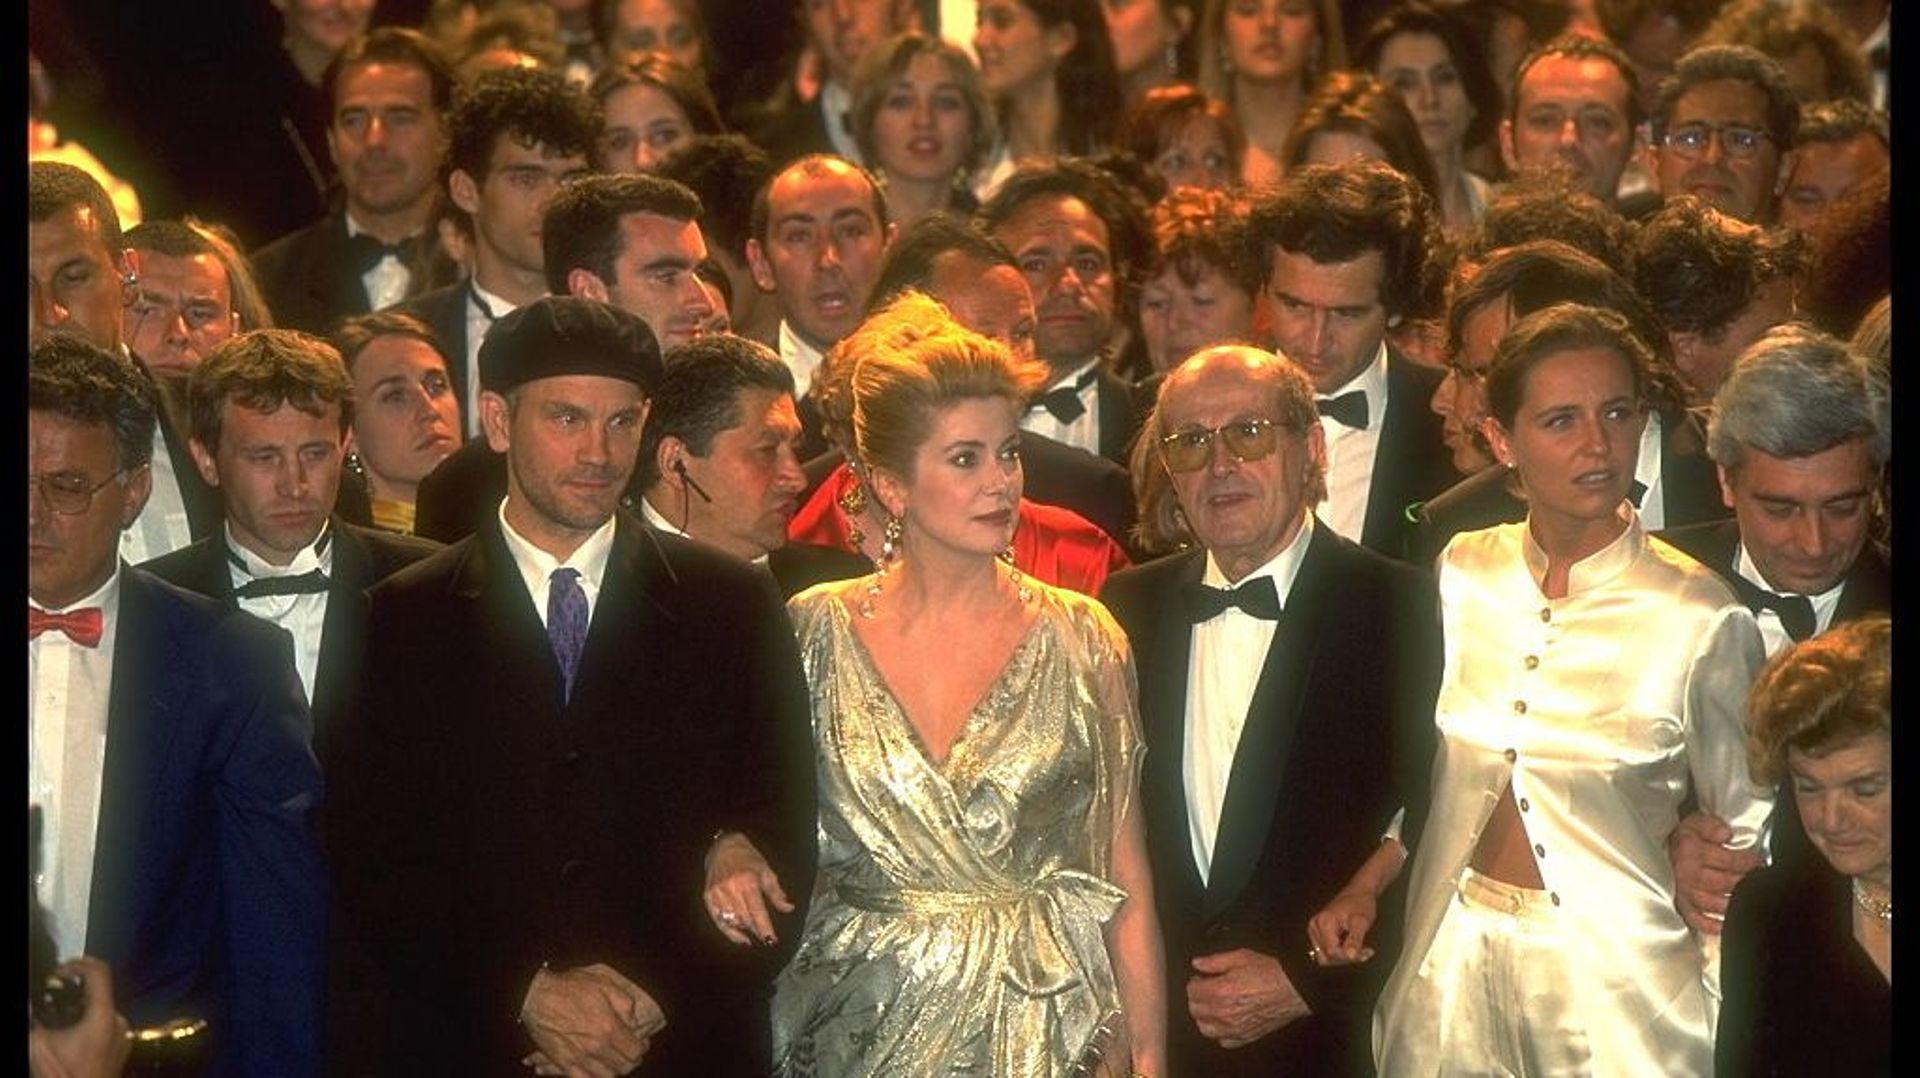 L'équipe du film "Le Couvent", en 1995 à Cannes. John Malkovich et Catherine Deneuve sont accompagnés du réalisateur portugais Manoel de Oliveira.